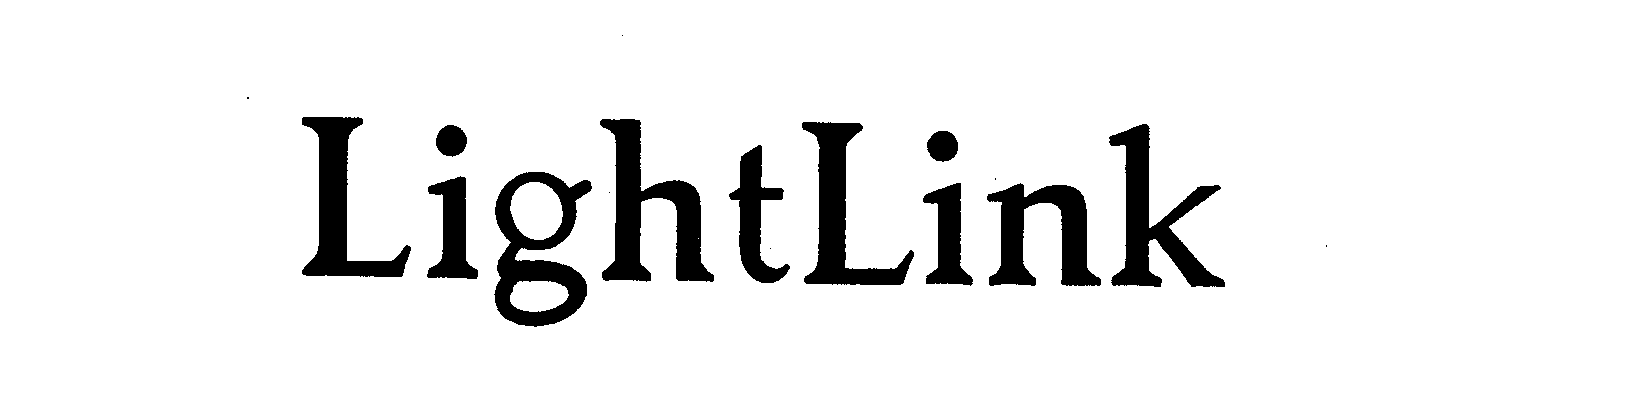 Trademark Logo LIGHTLINK